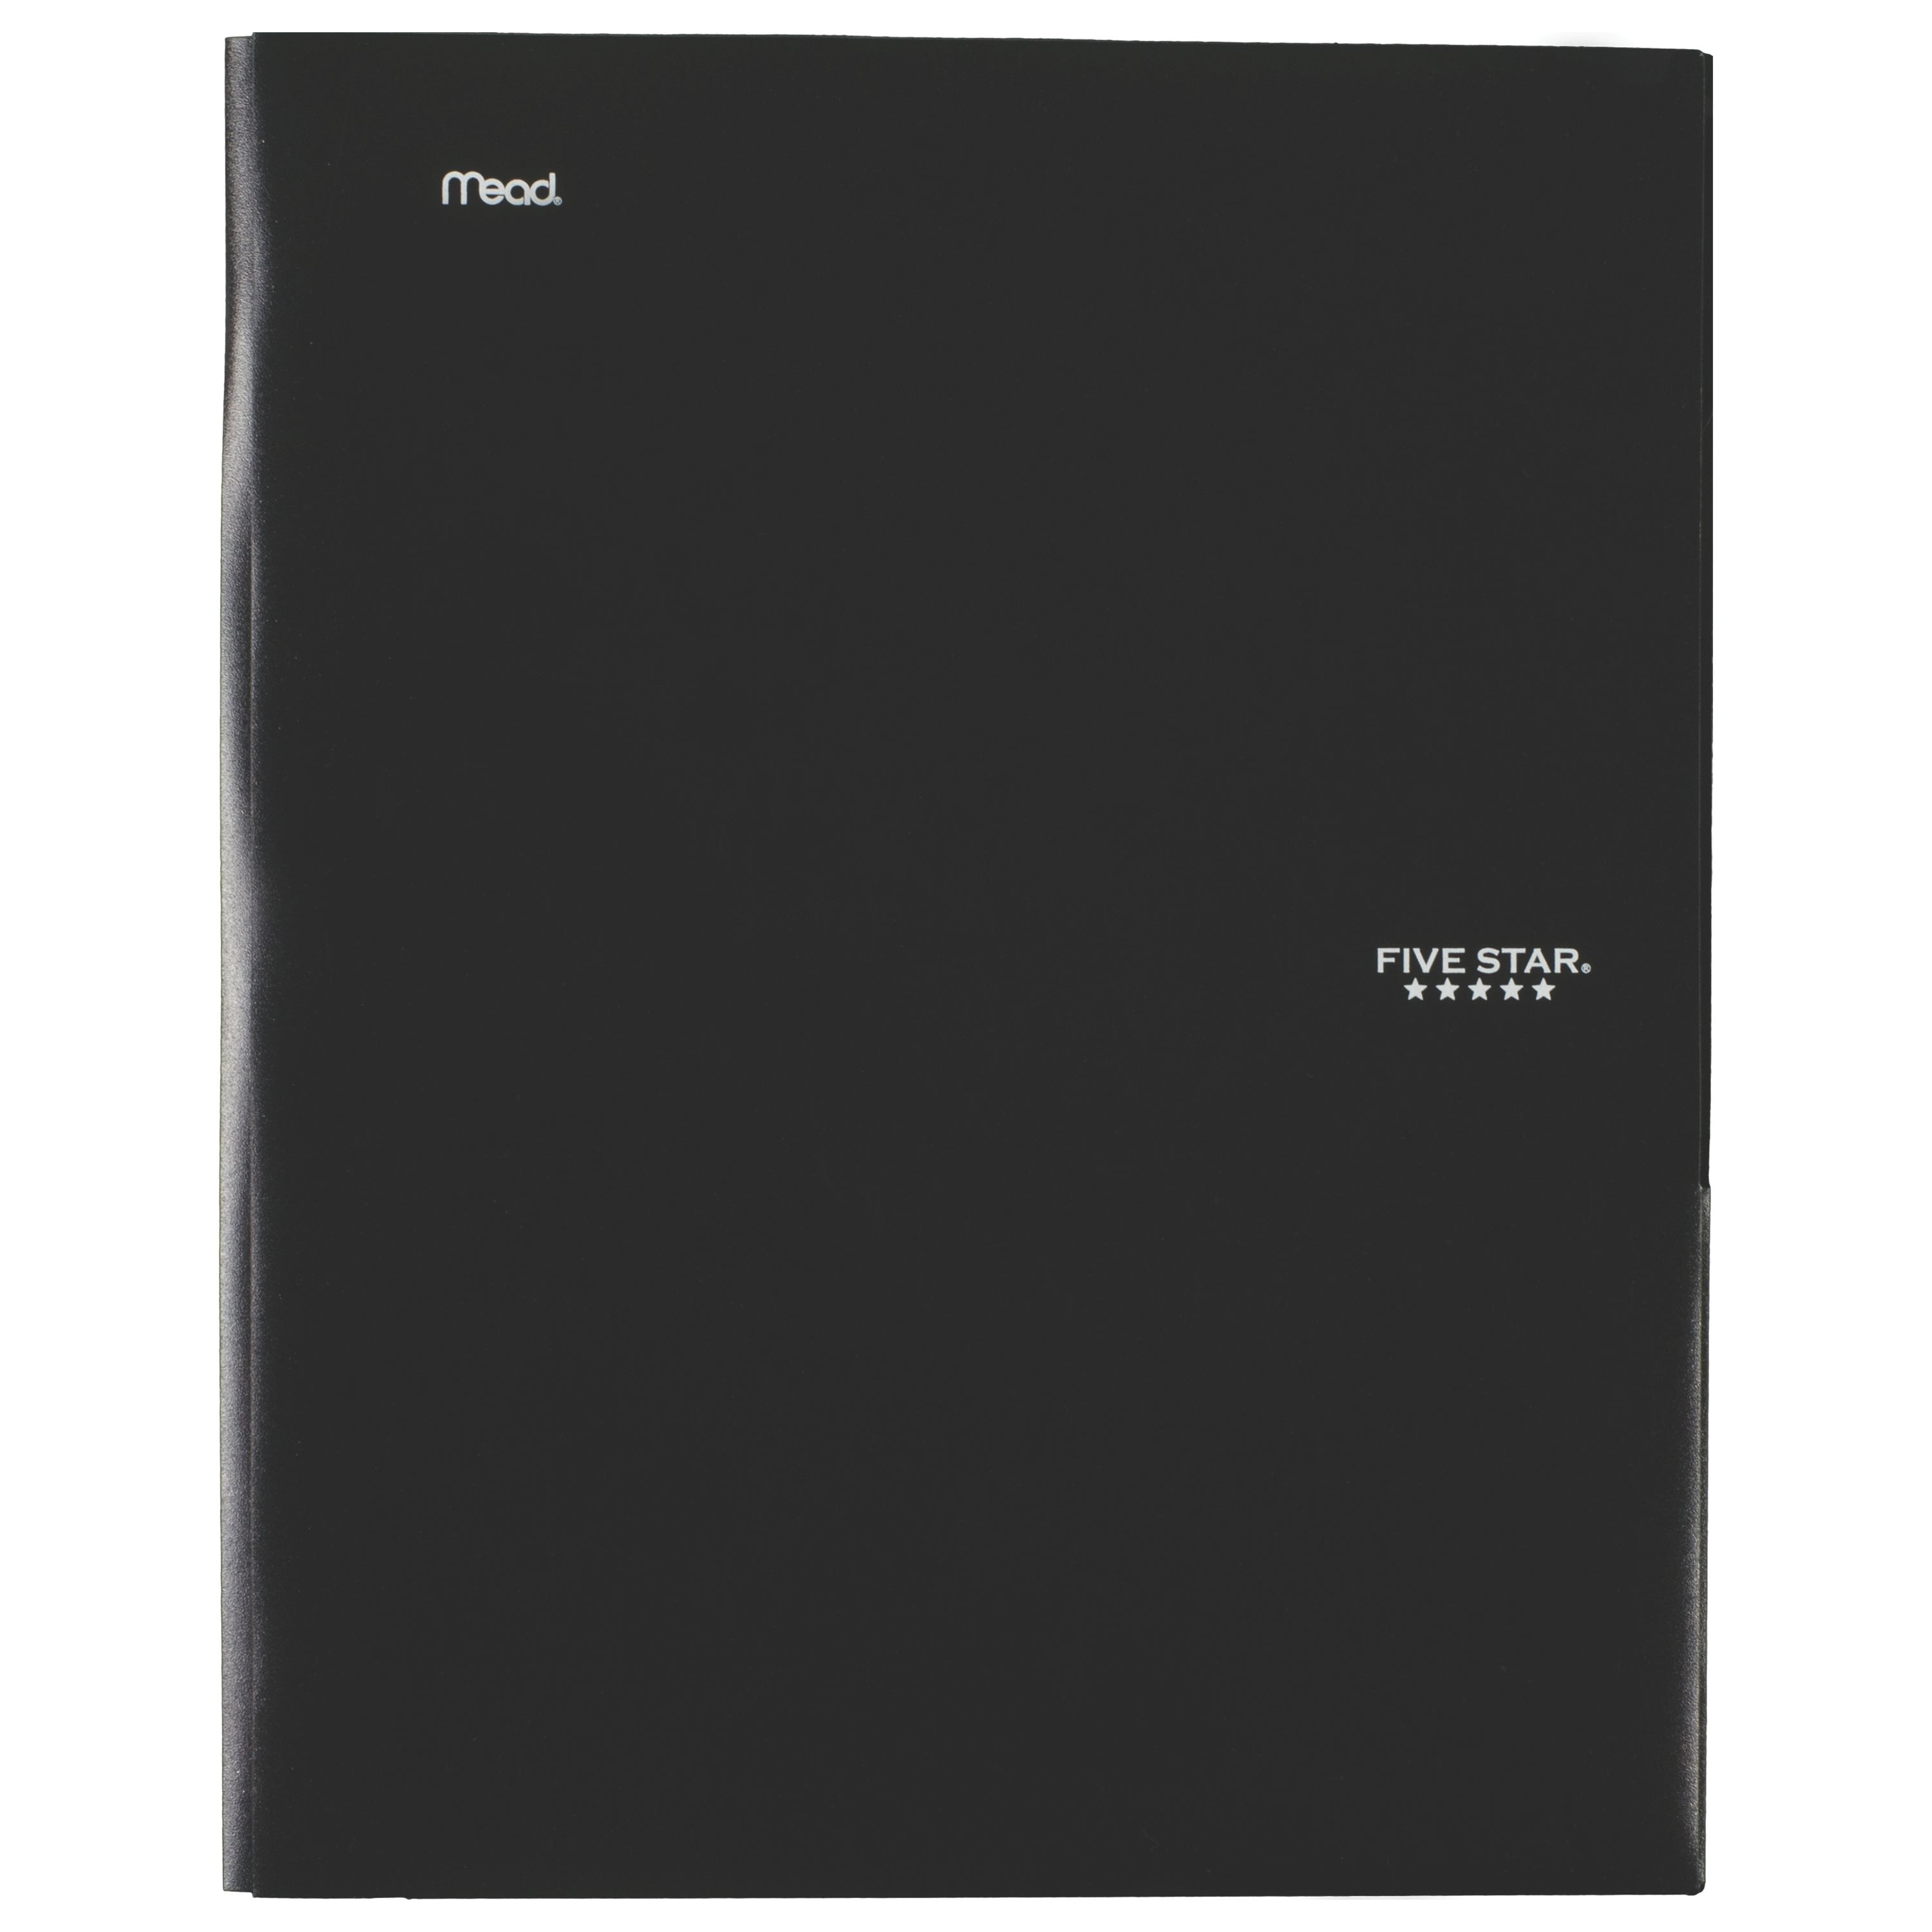 New Set Of 20 Mead Five Star 4 Pocket File Folders School Office RANDOM COLORS 